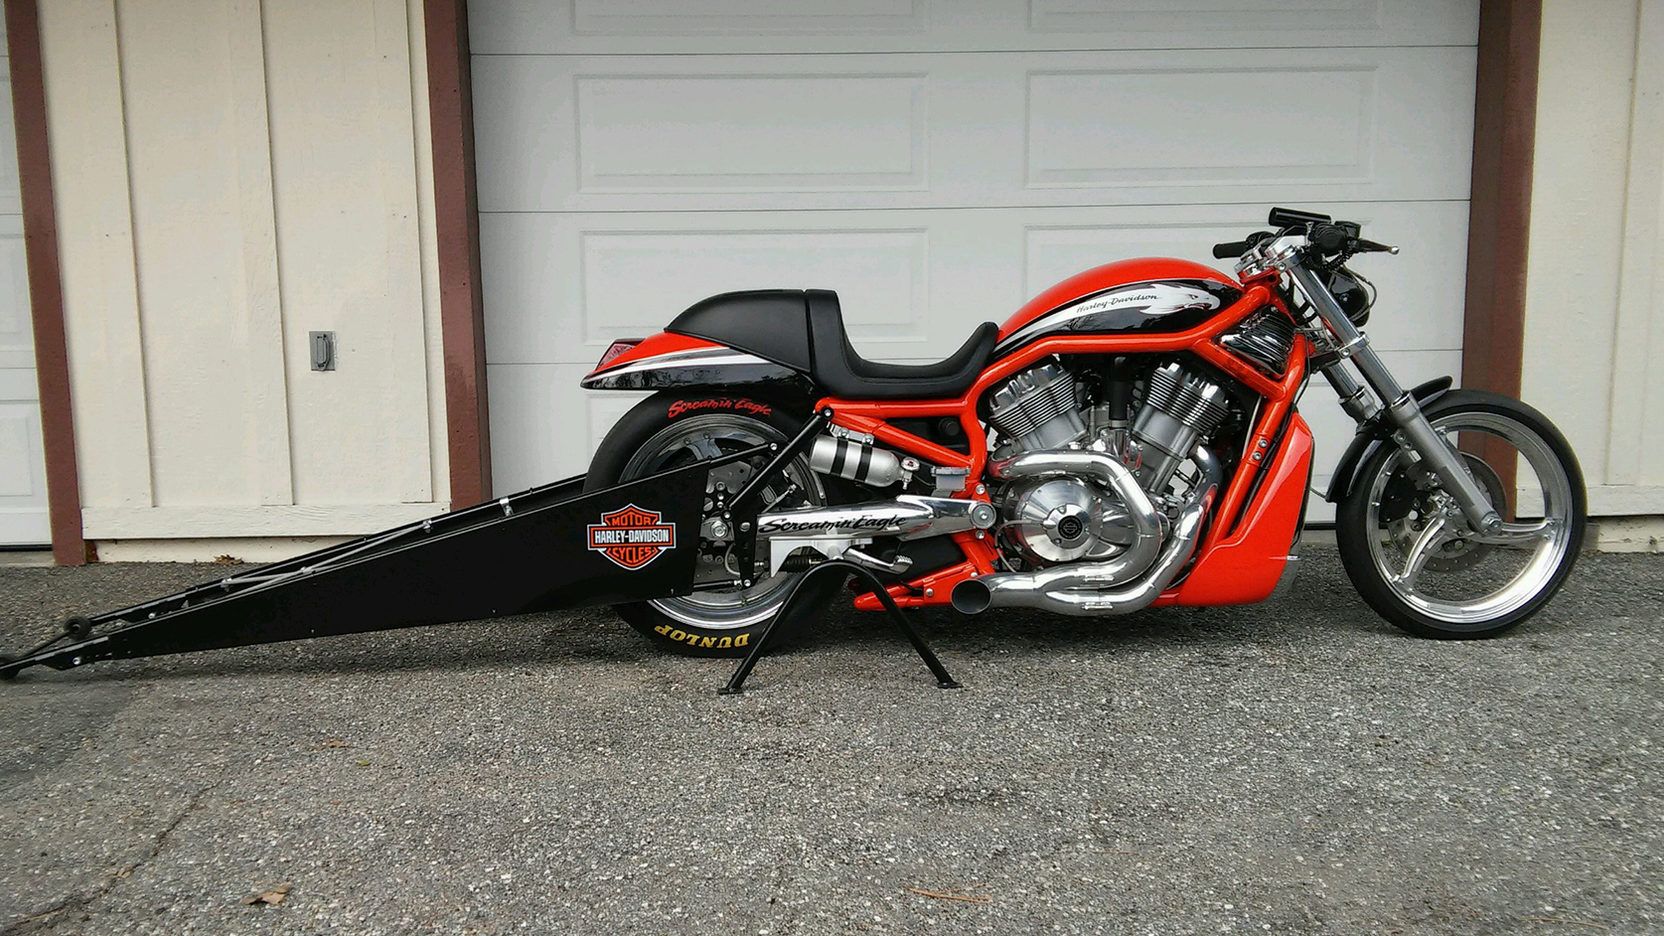 Harley Davidson Screamin' Eagle V-Rod Destroyer with wheelie bar